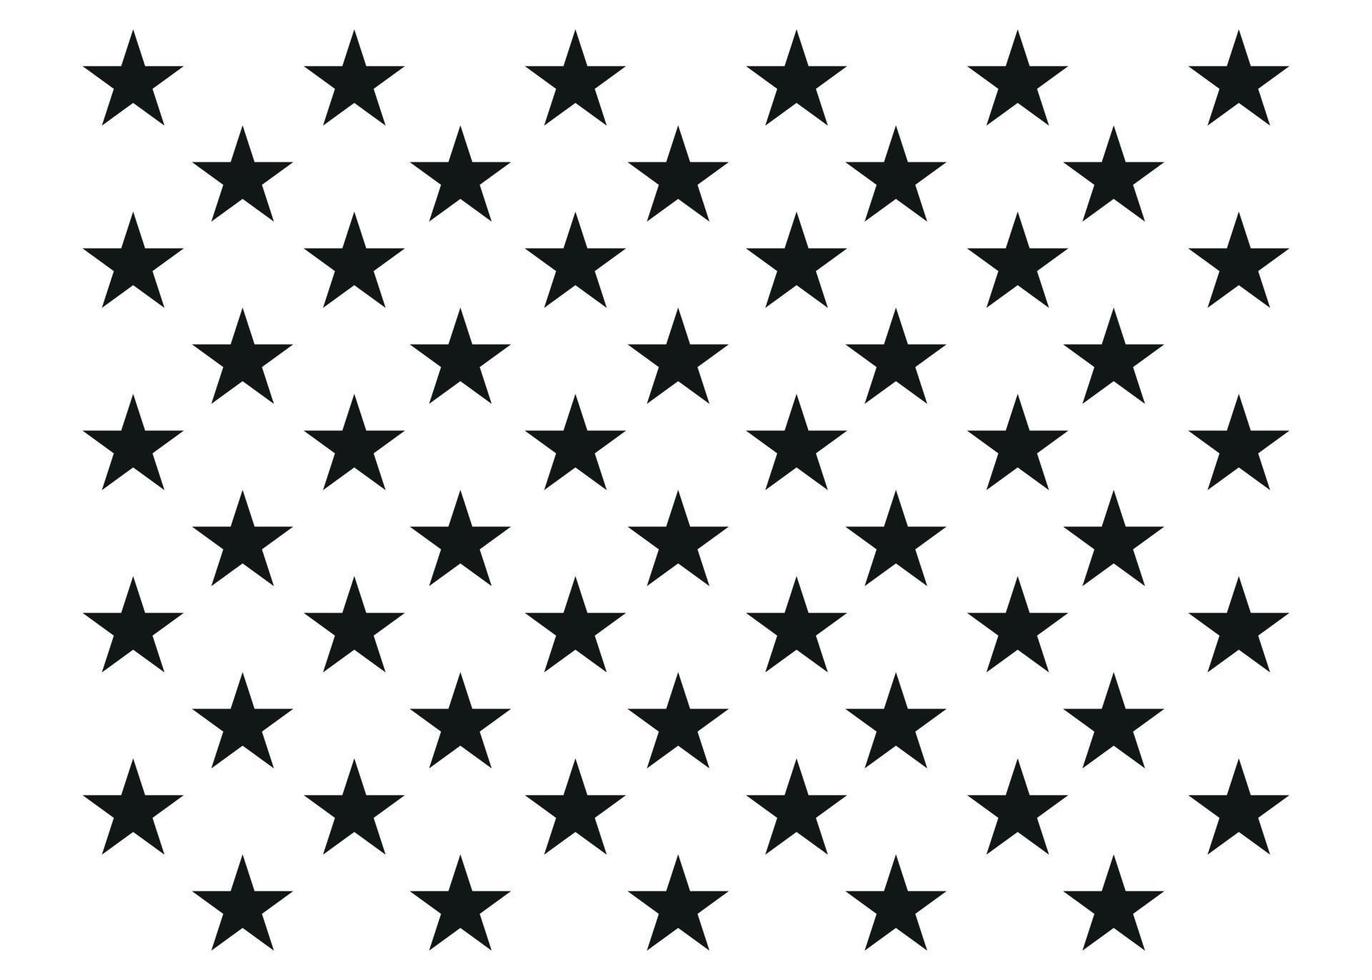 cinquante étoiles du drapeau américain. vecteur sur fond blanc. symbole américain. isolé sur fond blanc.